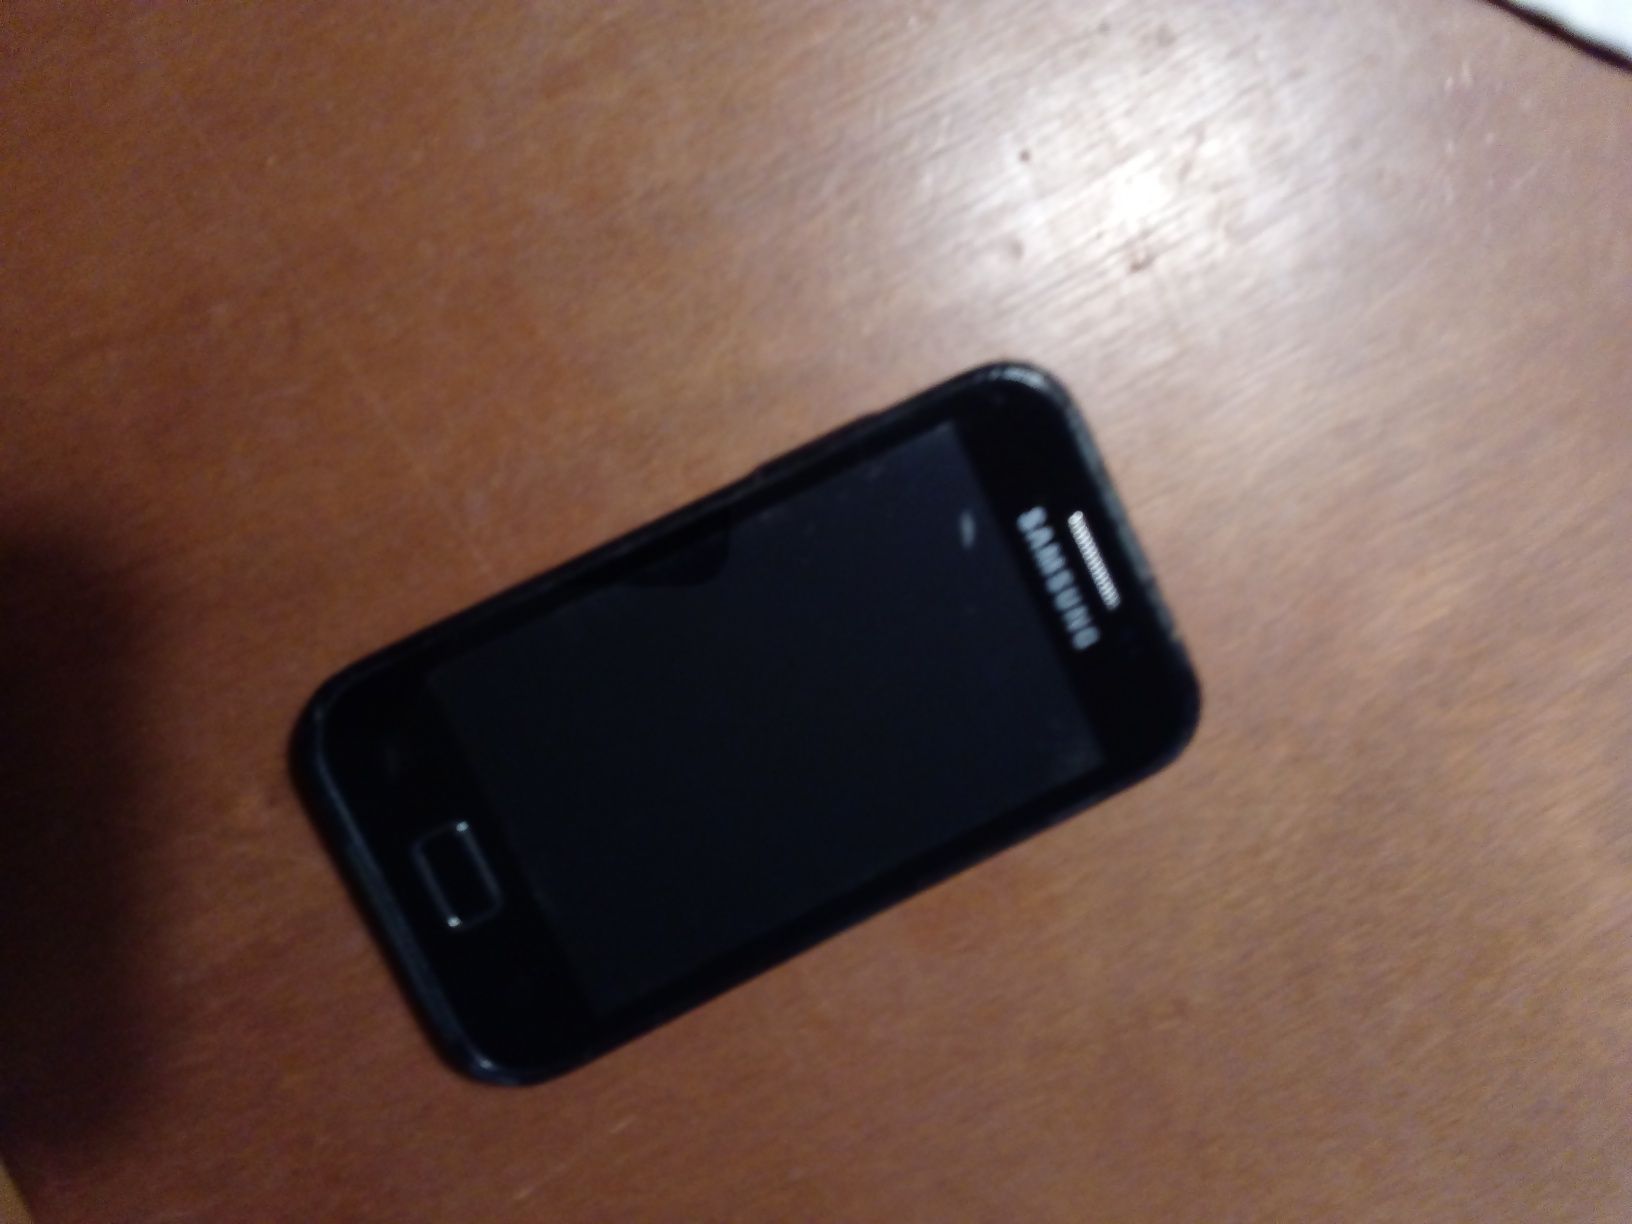 telemóvel Samsung pecas